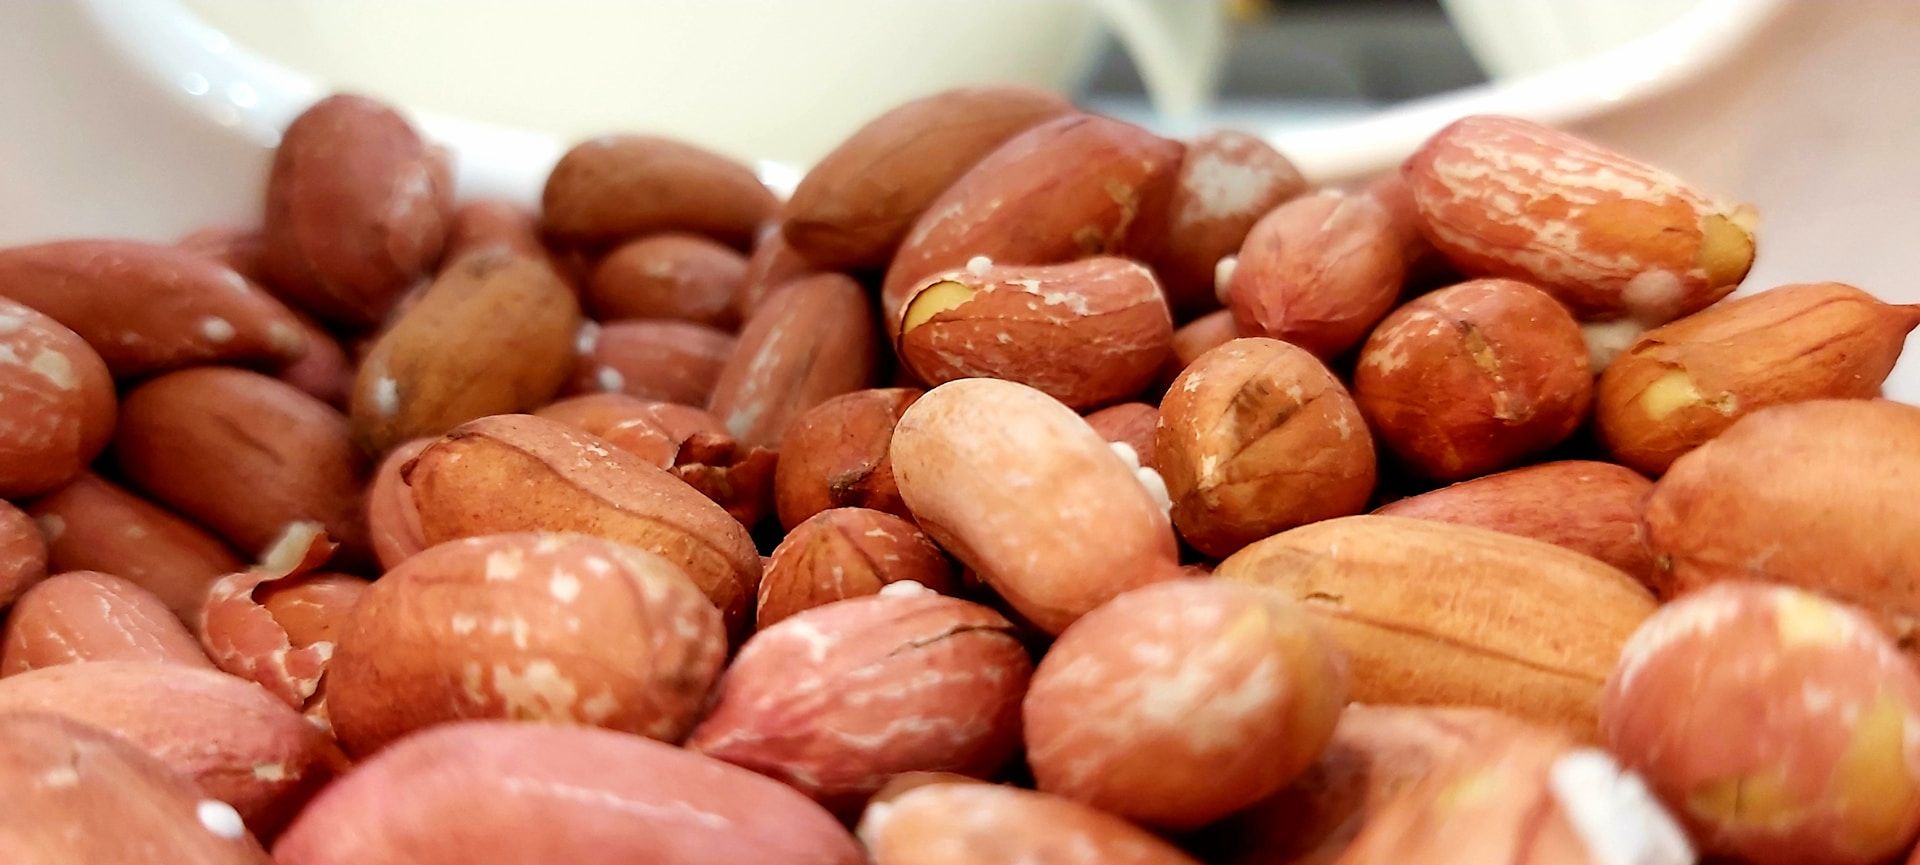 Імовірно, вчені зрозуміли, як запобігти розвитку алергії на арахіс - Здоровʼя 24